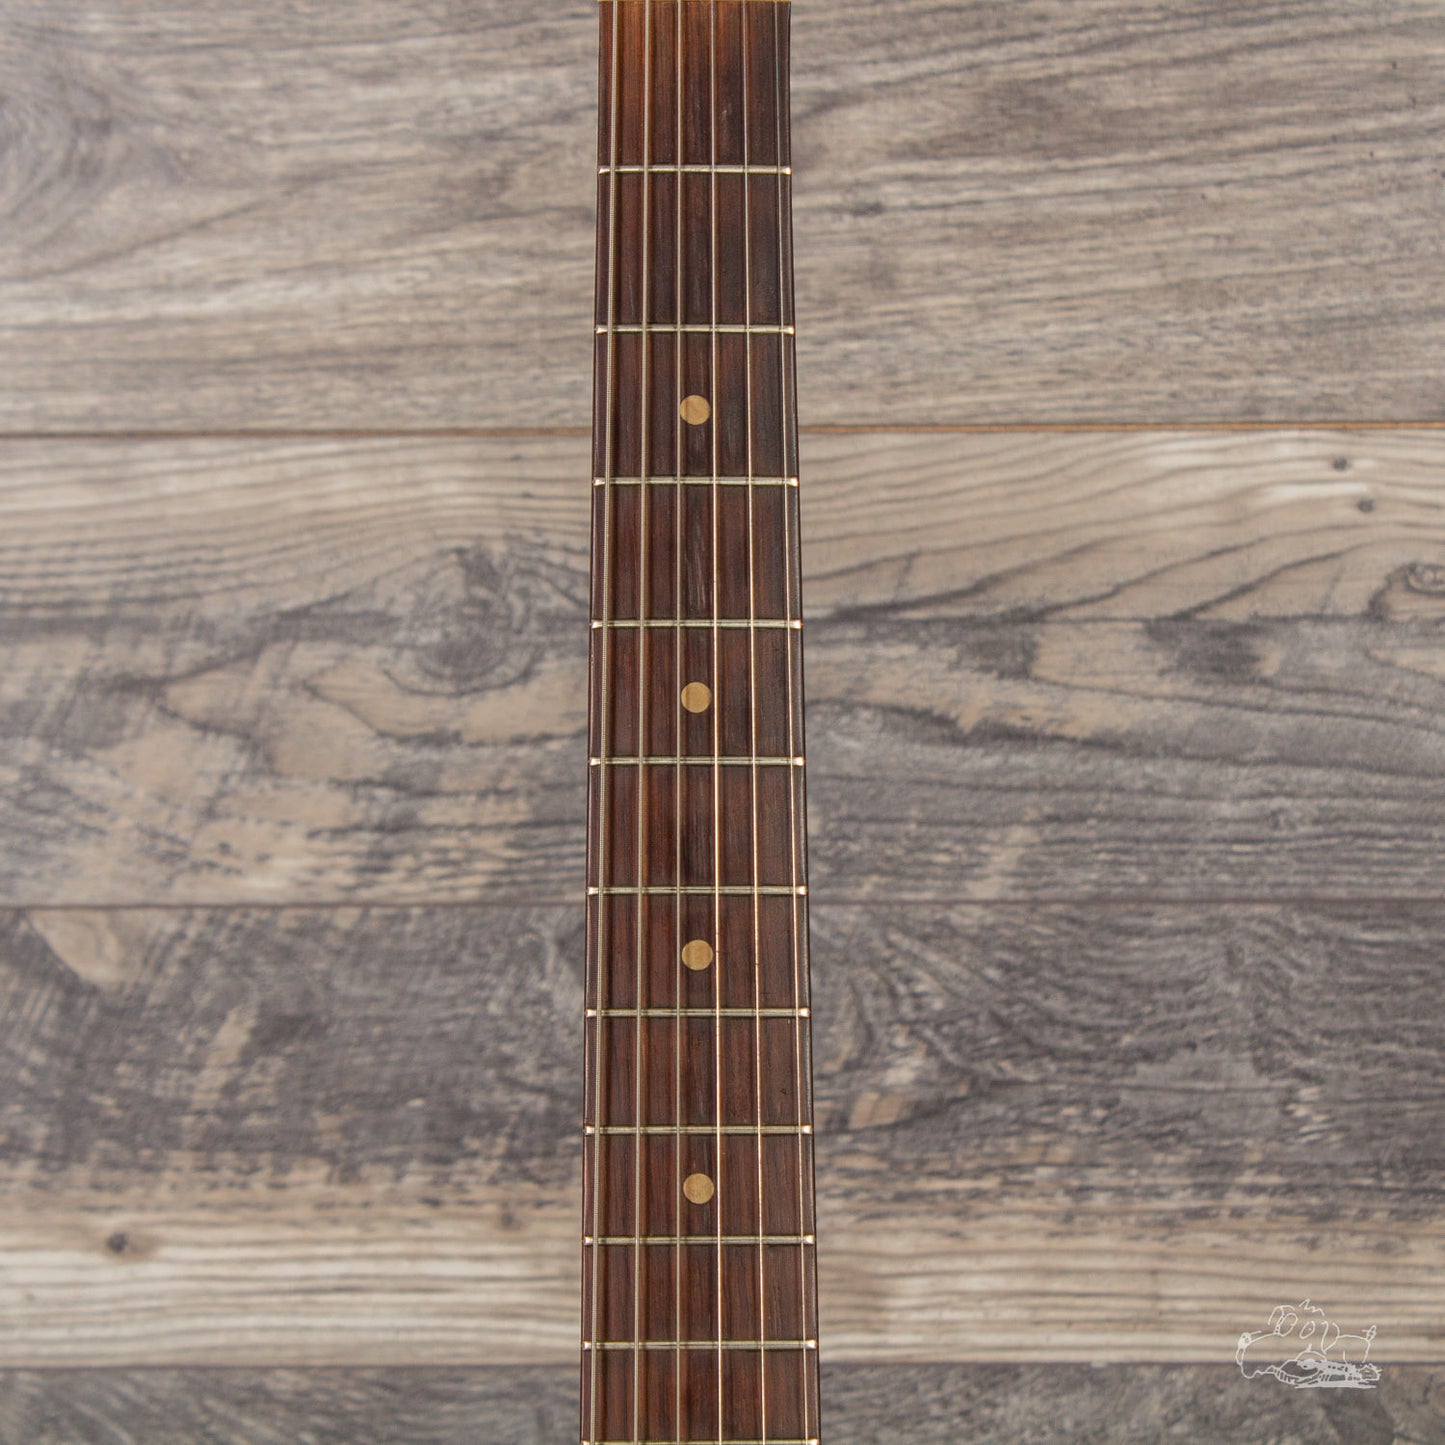 1959 Fender Stratocaster